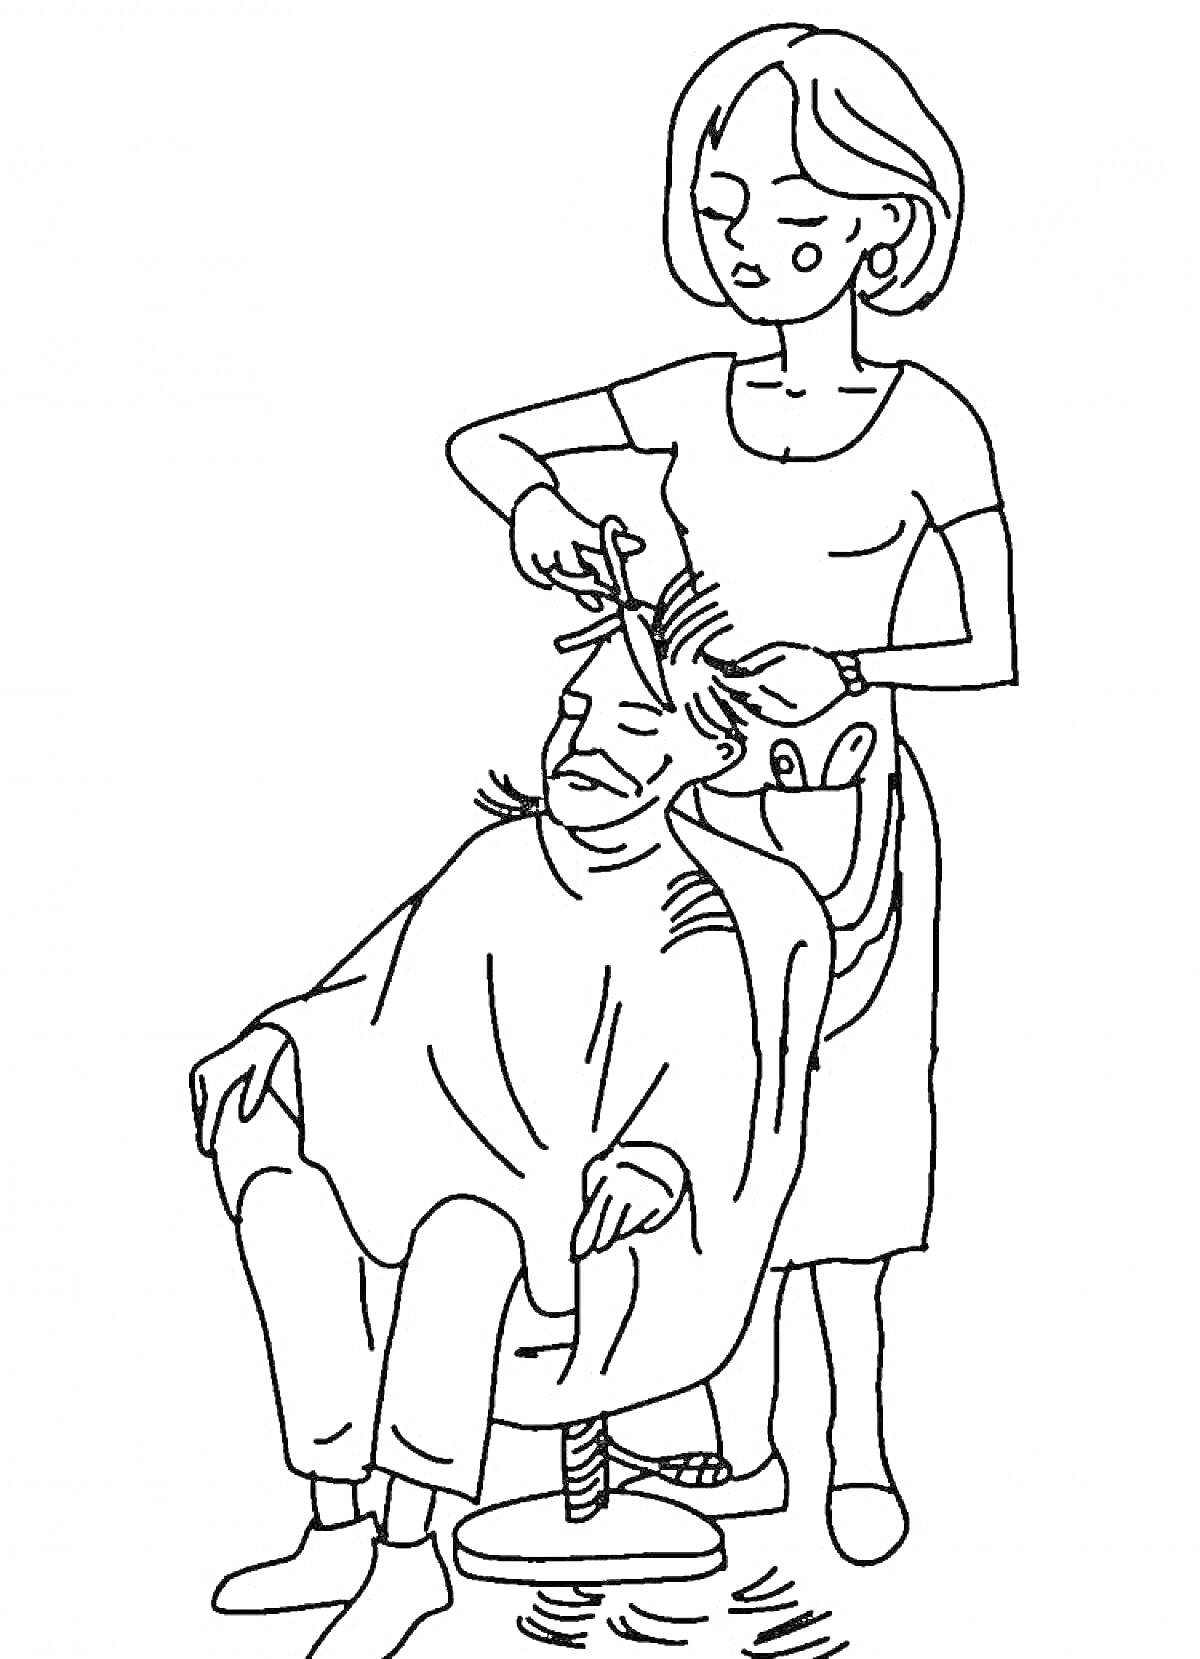 Мужчина в парикмахерском кресле с парикмахером